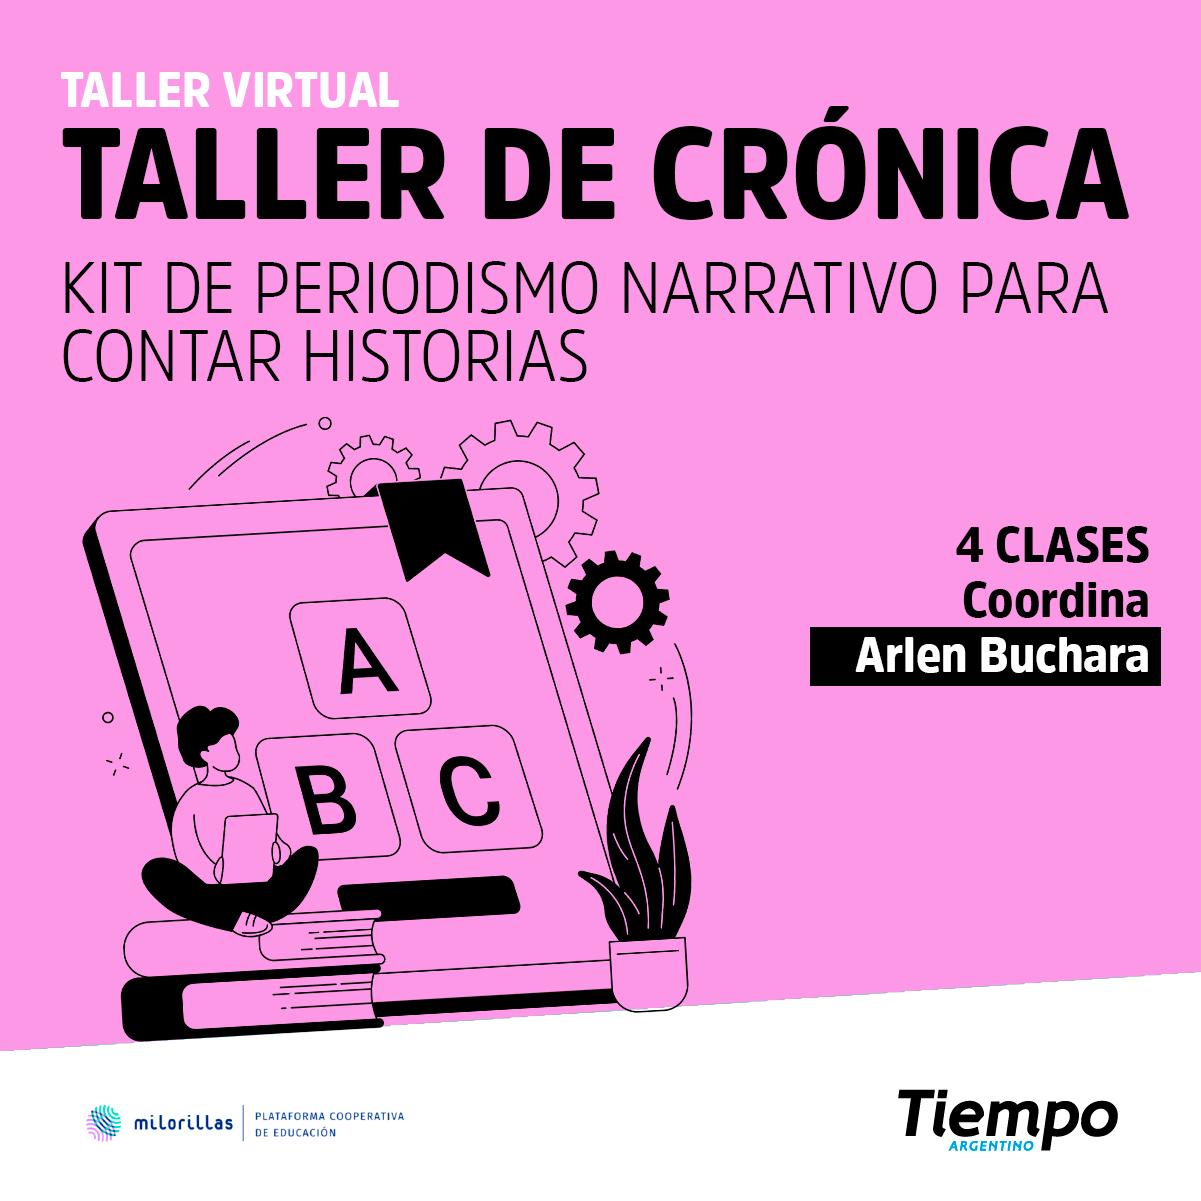 Taller de Crónica: 